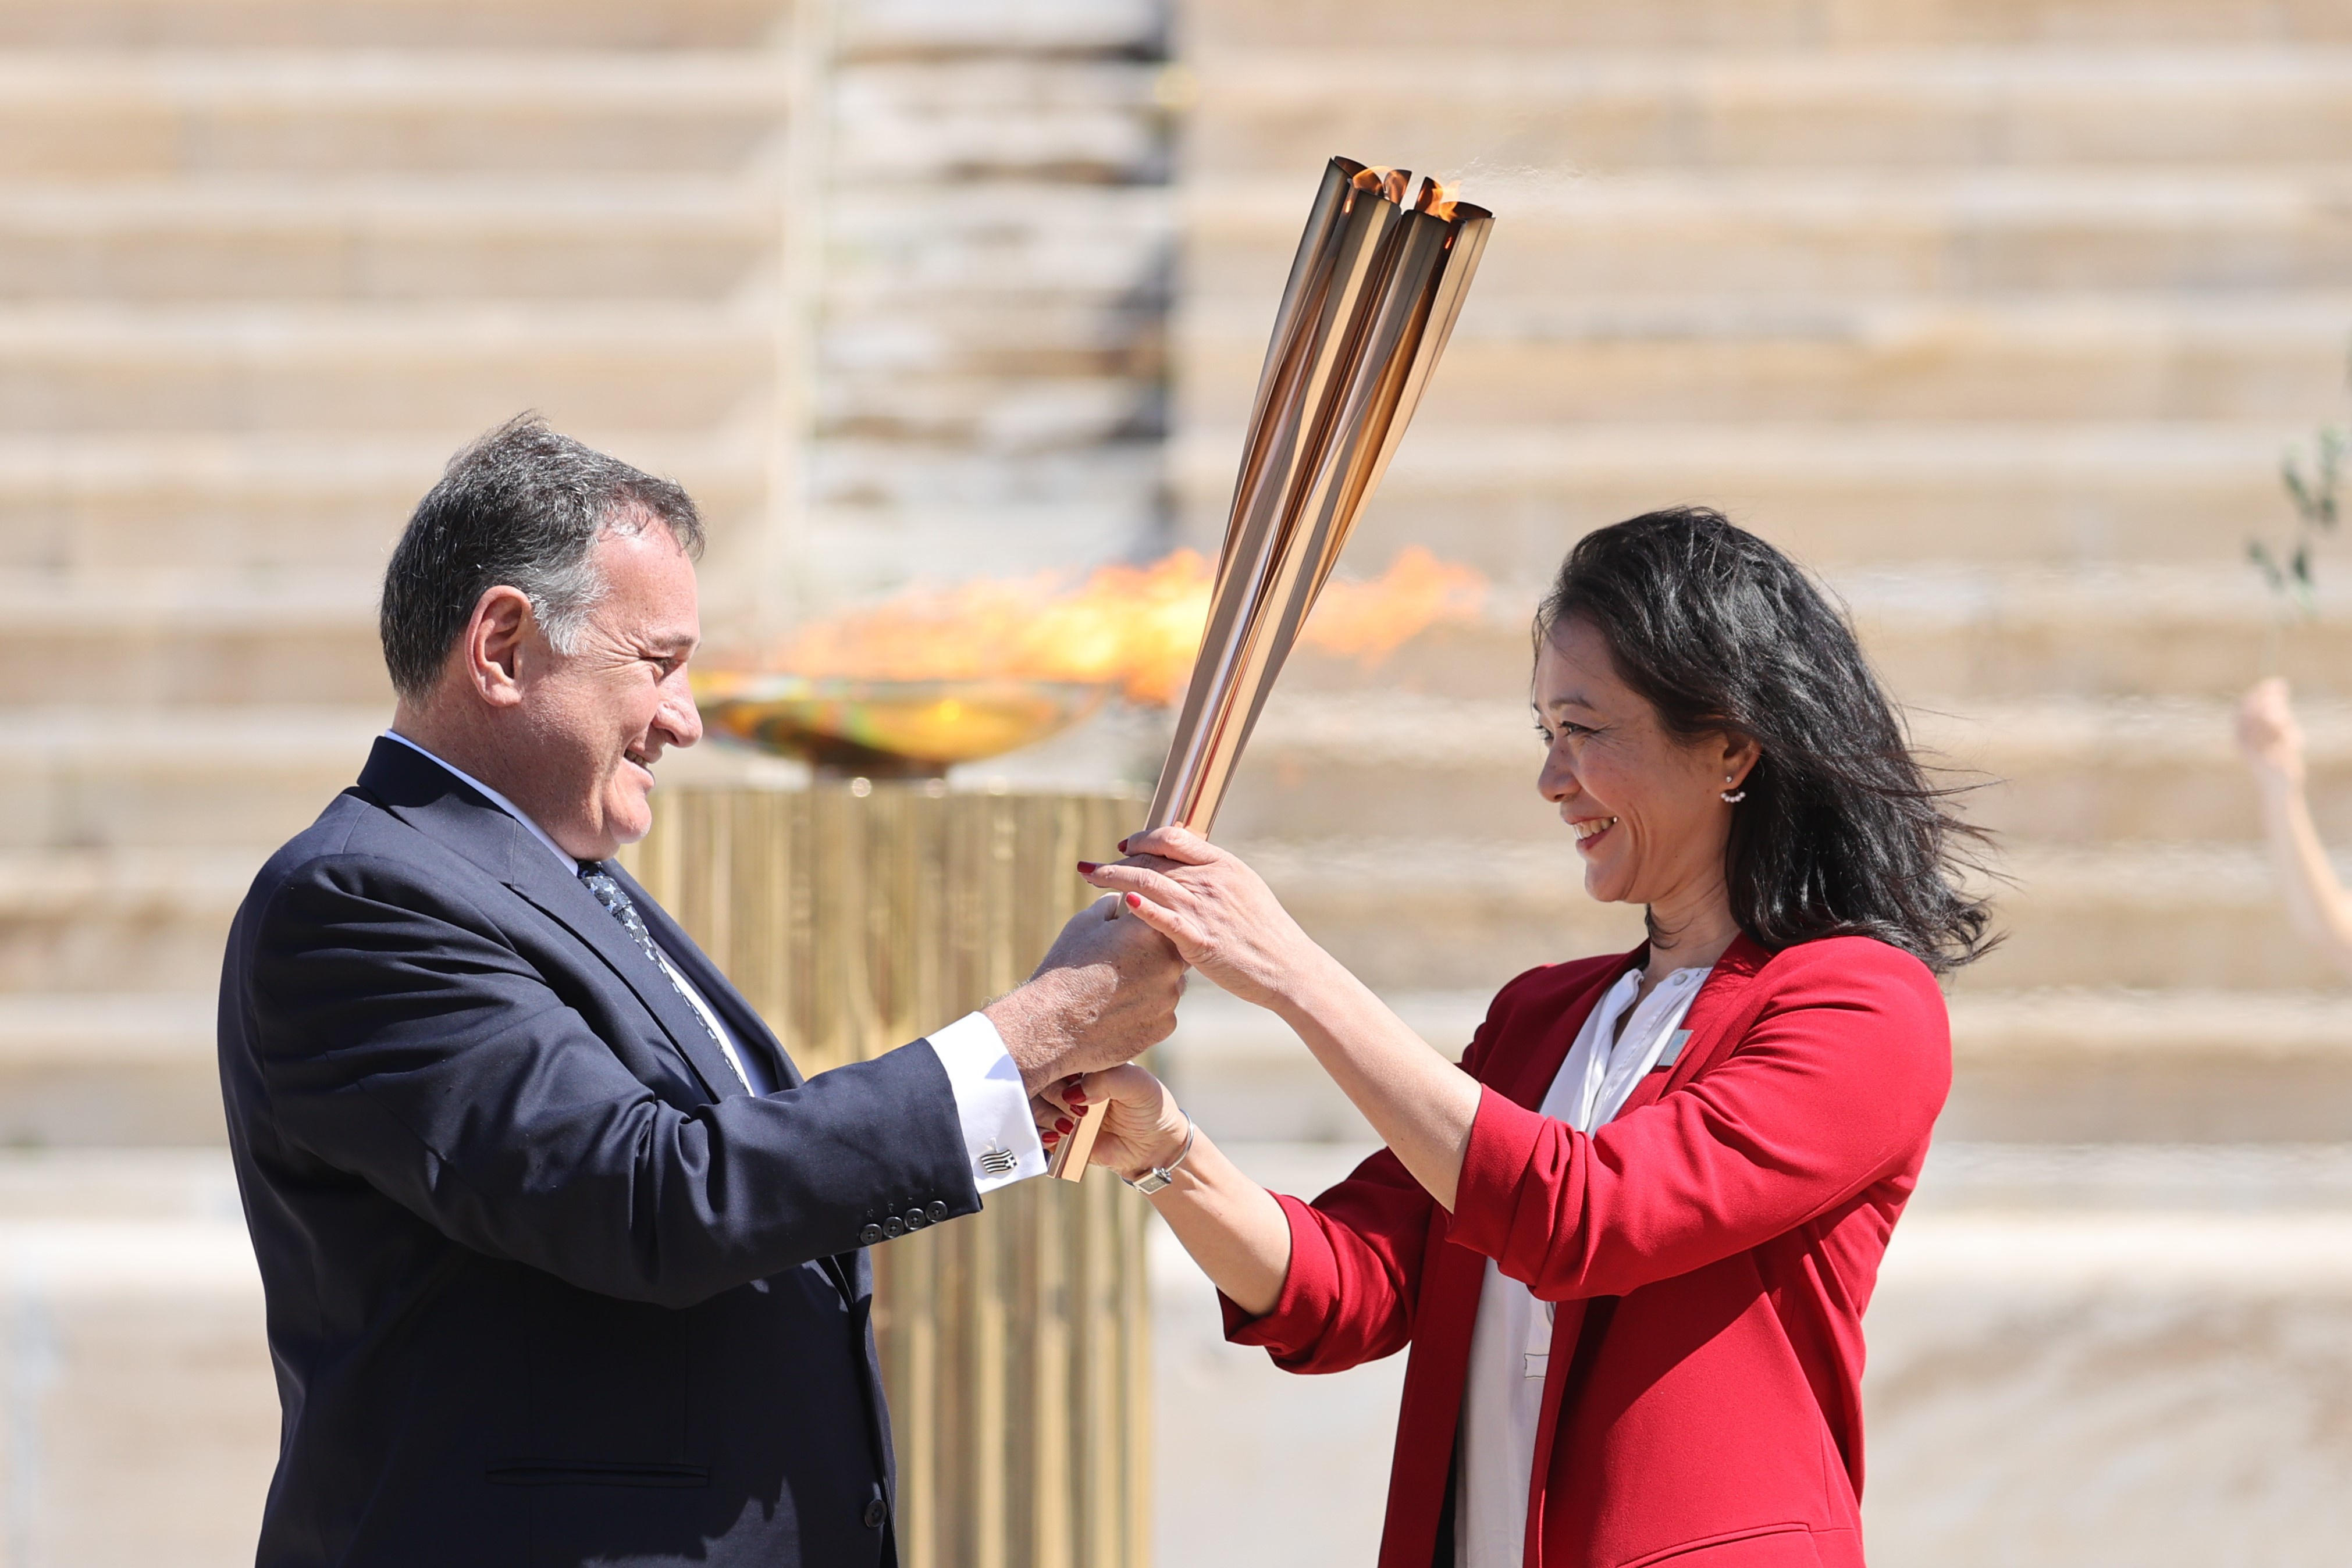 Védőfelszerelés nélkül adta át az olimpiai lángot Görögország Japánnak